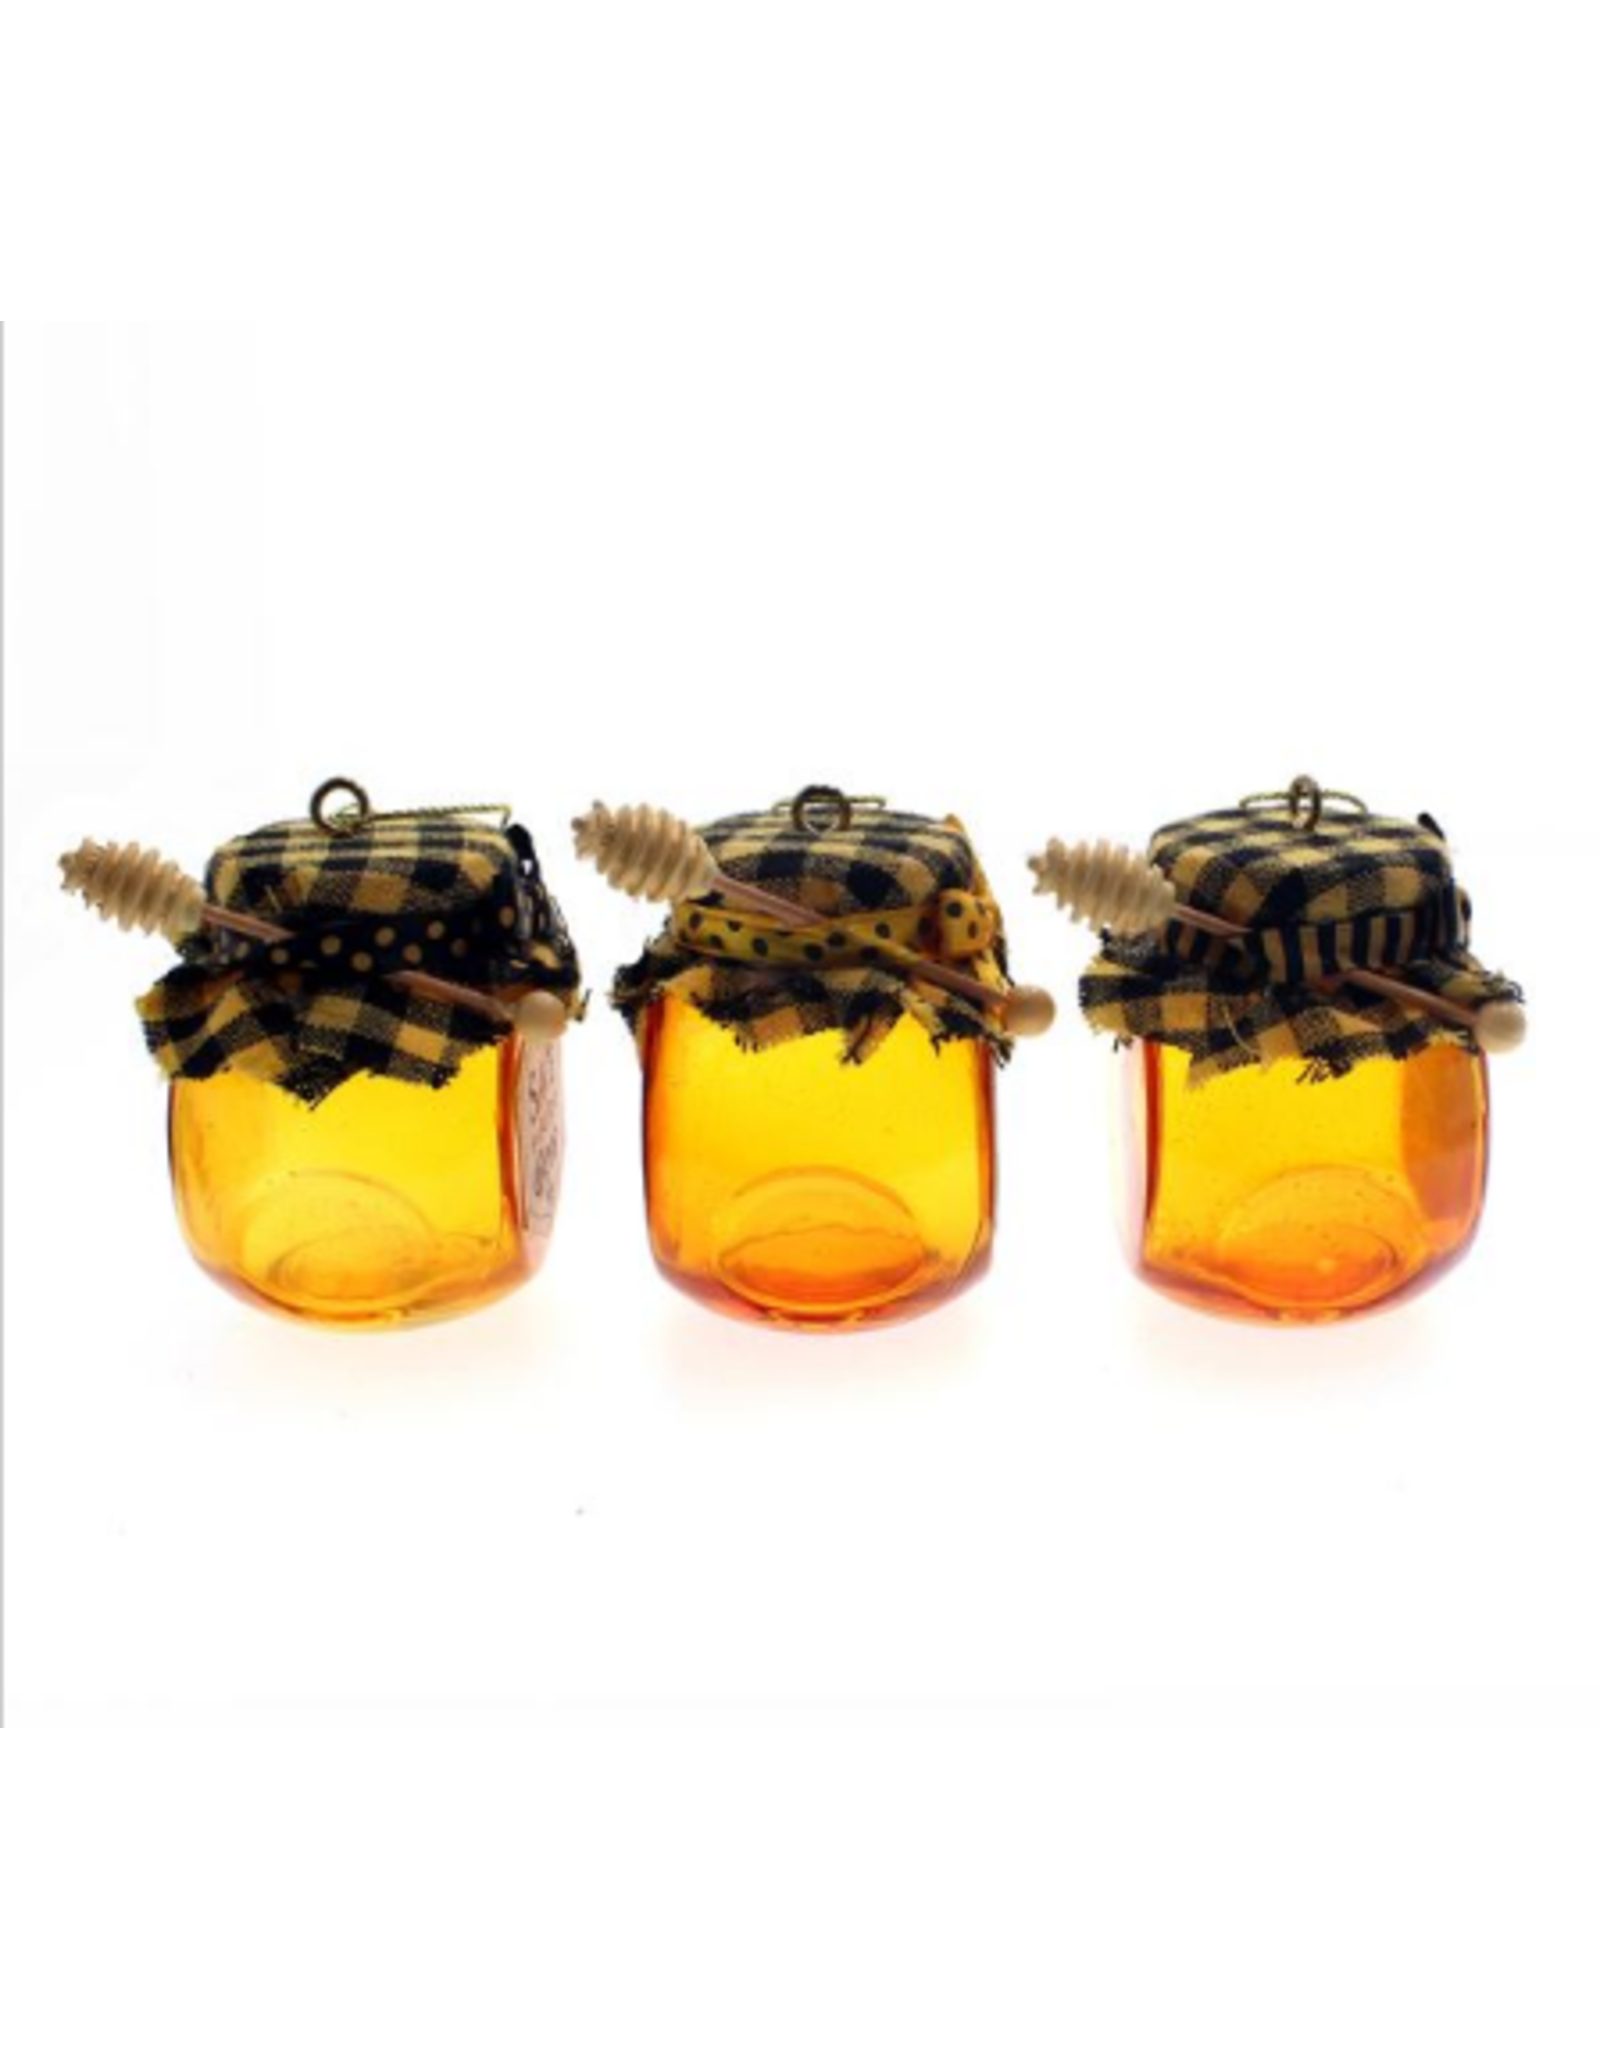 Kurt S. Adler Glass Honey Jar Ornament